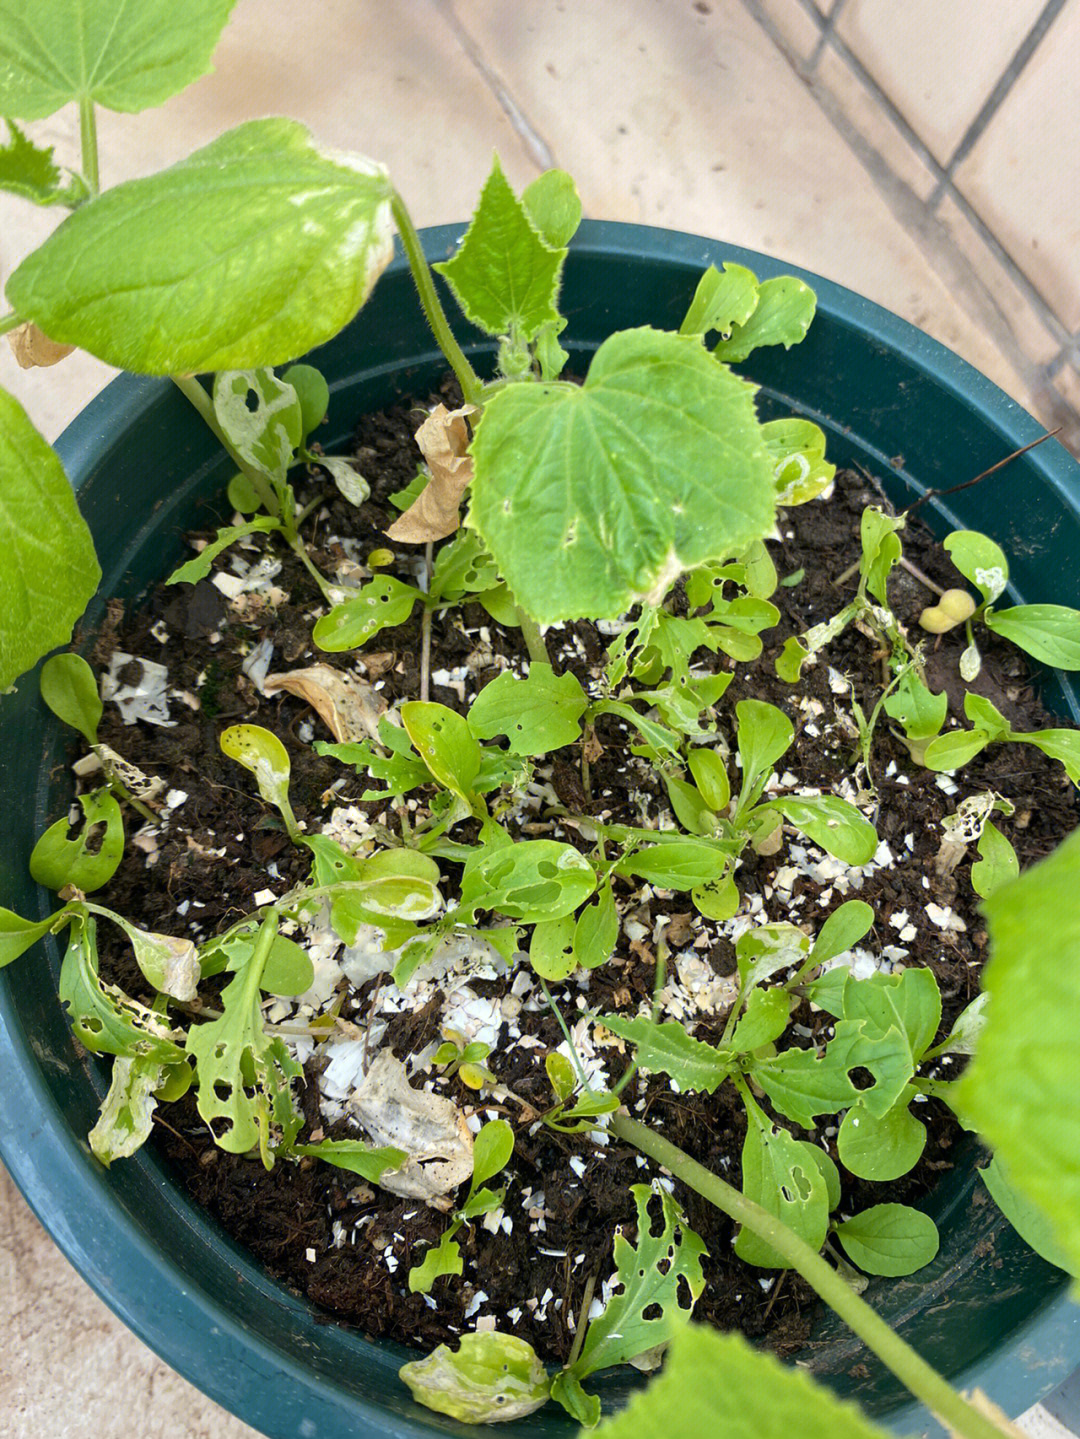 青菜籽的发芽过程图片